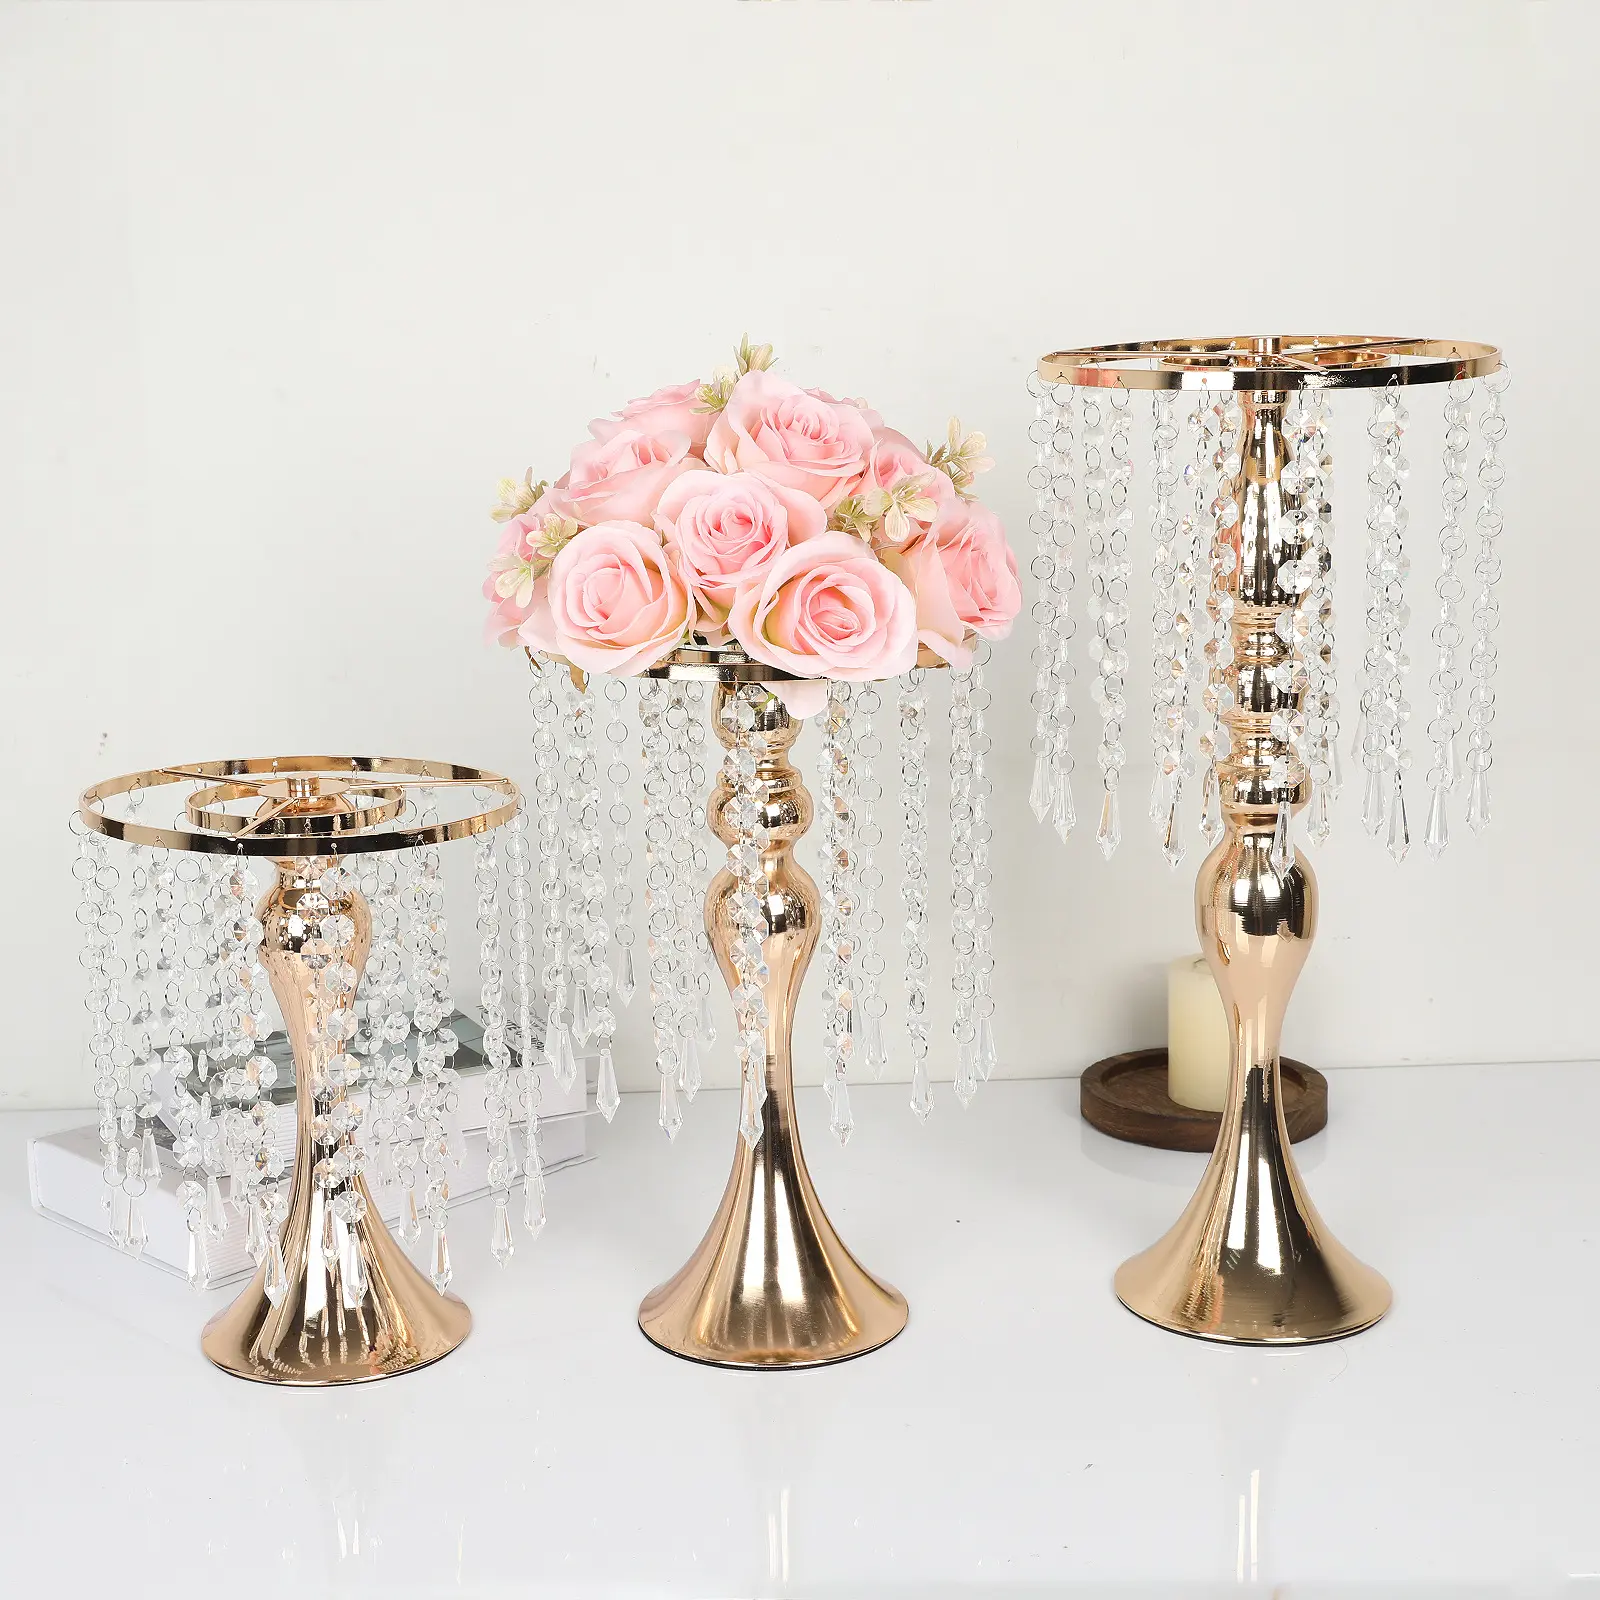 Nicro Light di lusso placcato in metallo placcato supporto per fiori all'aperto tavolo di nozze centrotavola decorazione fiore oro